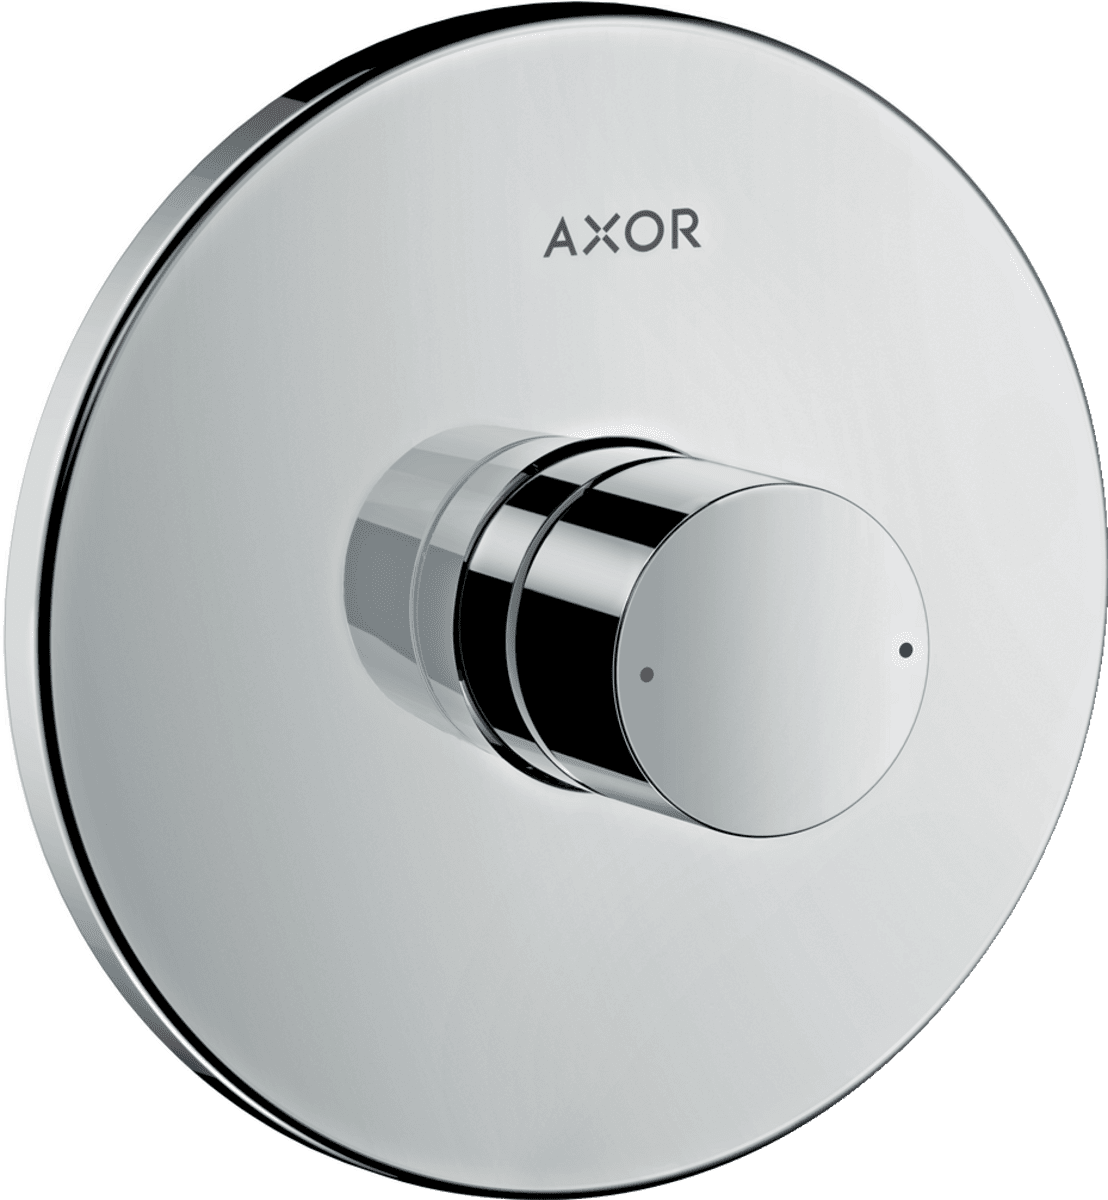 εικόνα του HANSGROHE AXOR Uno Single lever shower mixer for concealed installation with zero handle #45605000 - Chrome